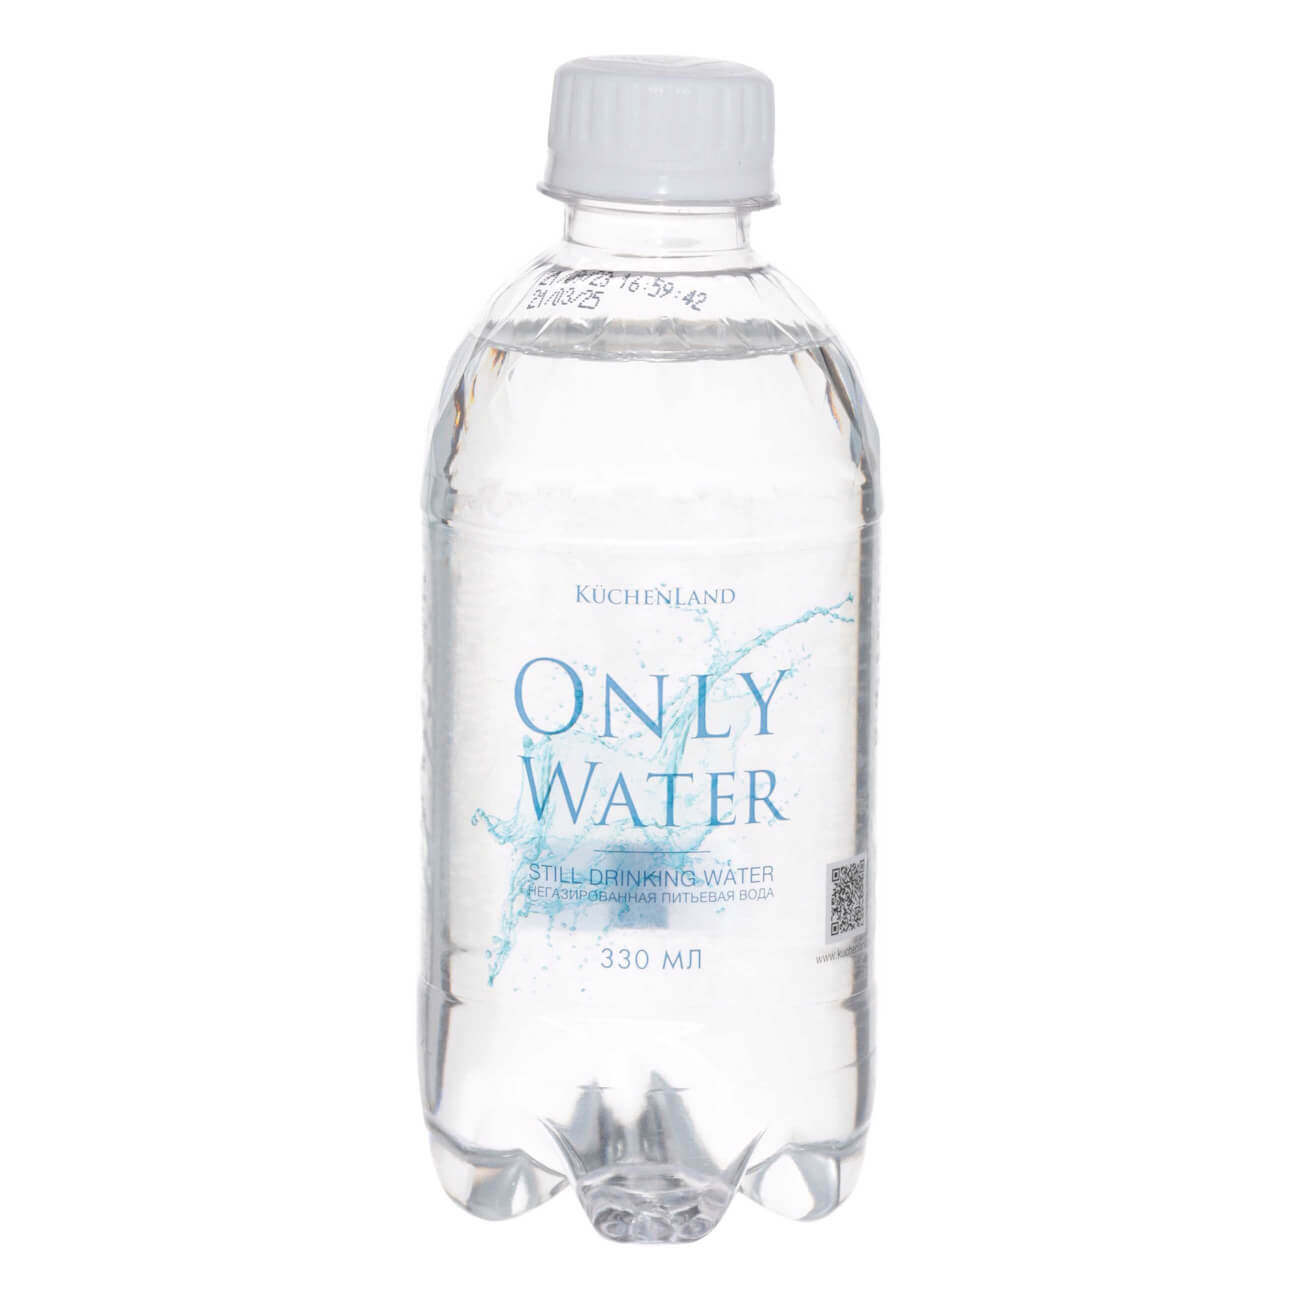 Вода, 330 мл, питьевая, негазированная, в бутылке, Only water вода для утюга jundo ironing water 1 л